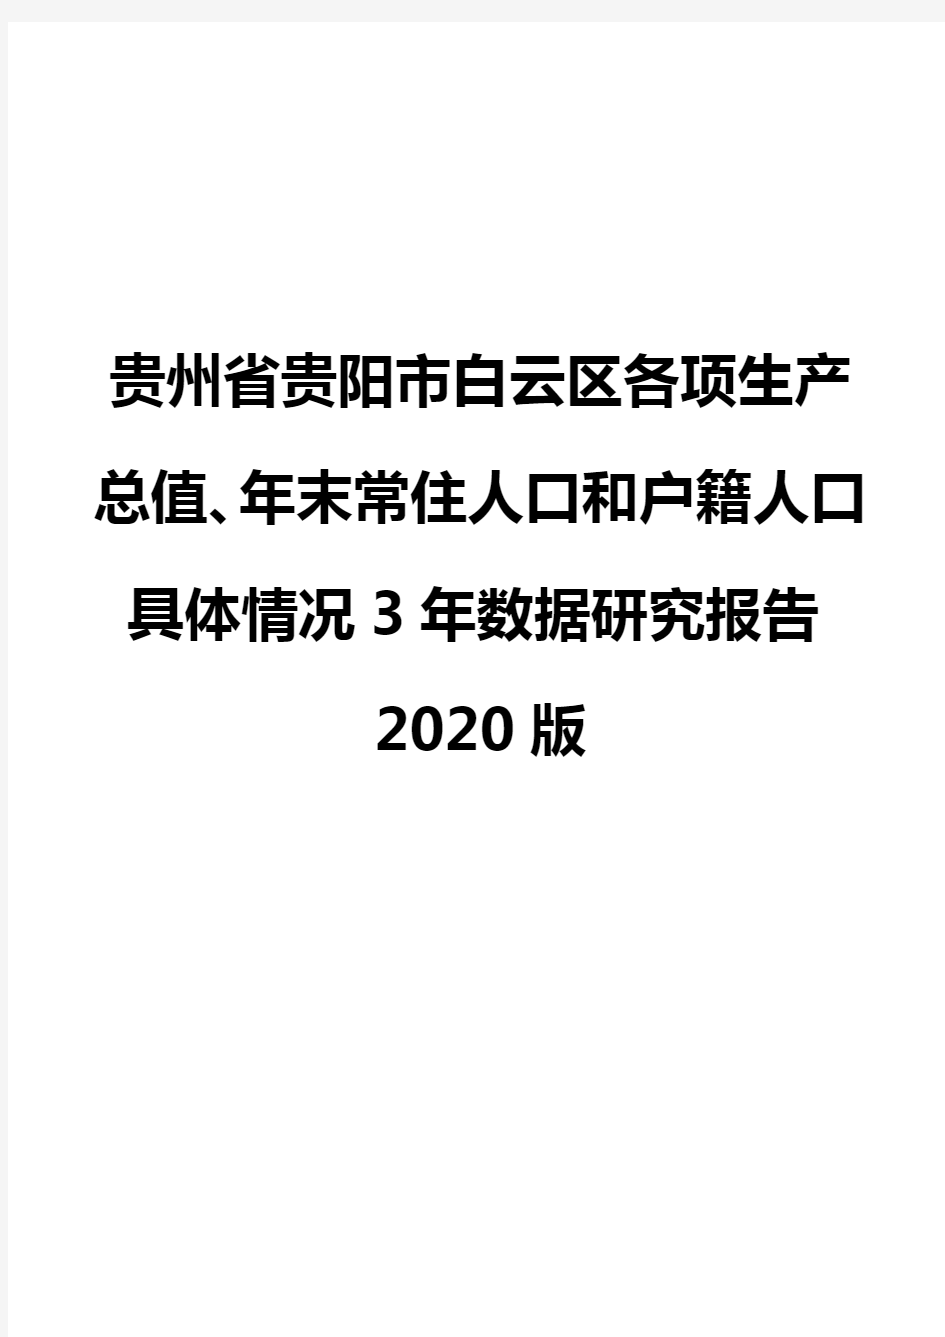 贵州省贵阳市白云区各项生产总值、年末常住人口和户籍人口具体情况3年数据研究报告2020版